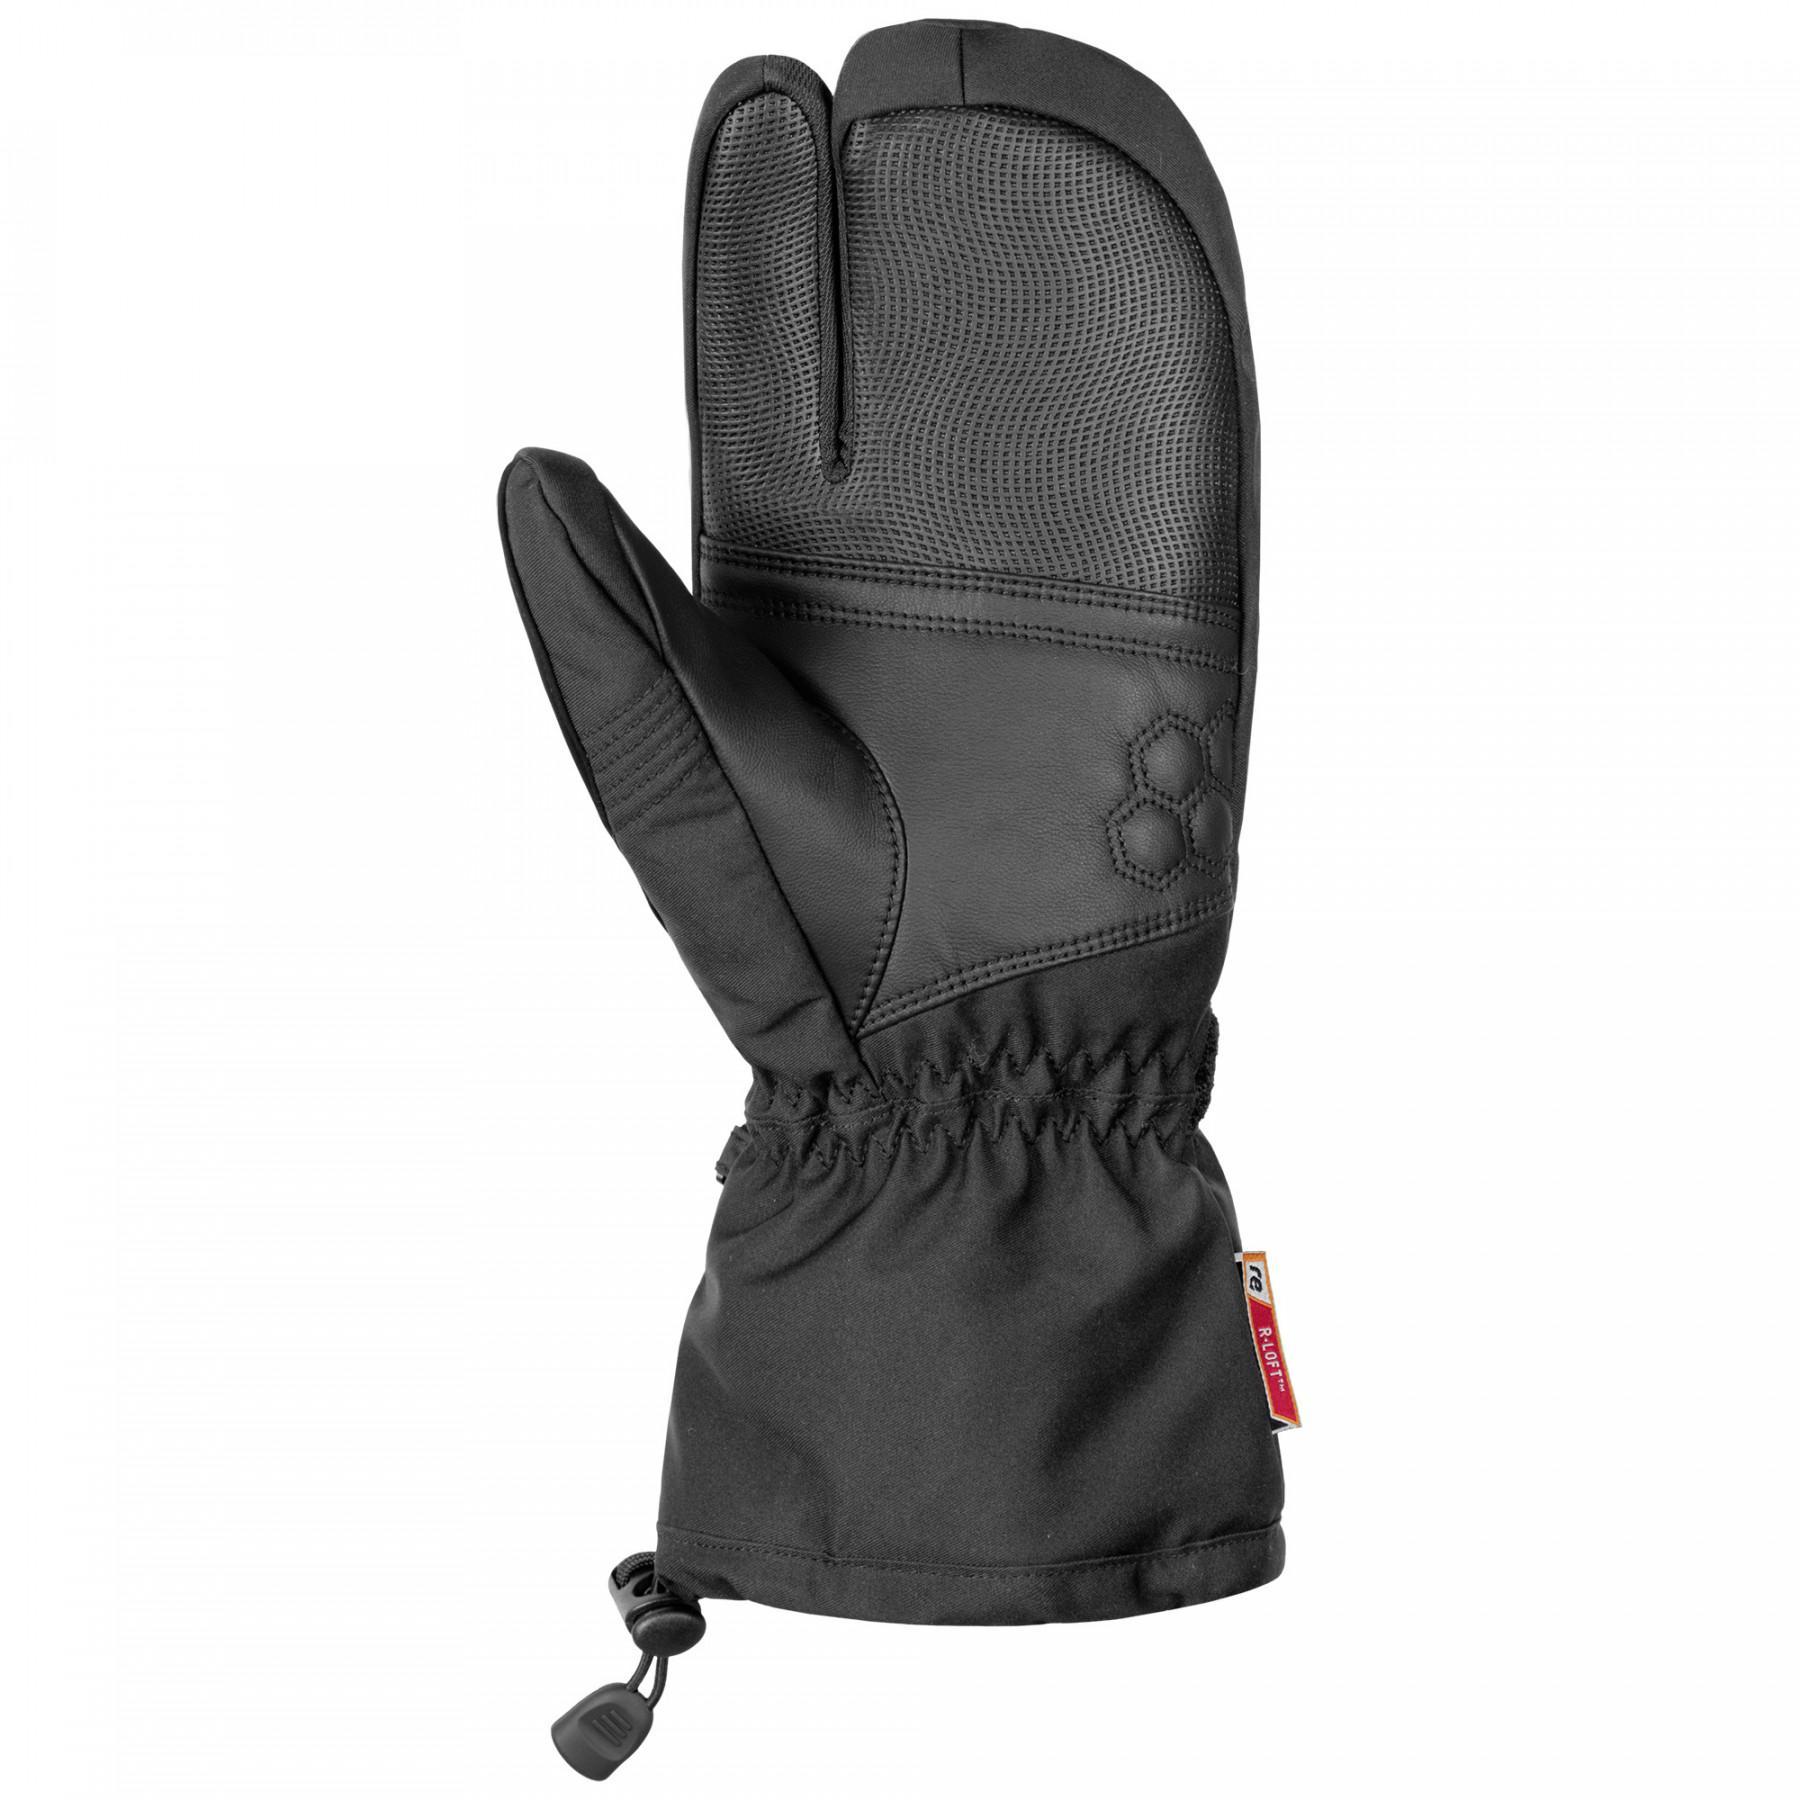 Handschuhe Reusch Connor R-tex® XT Lobster